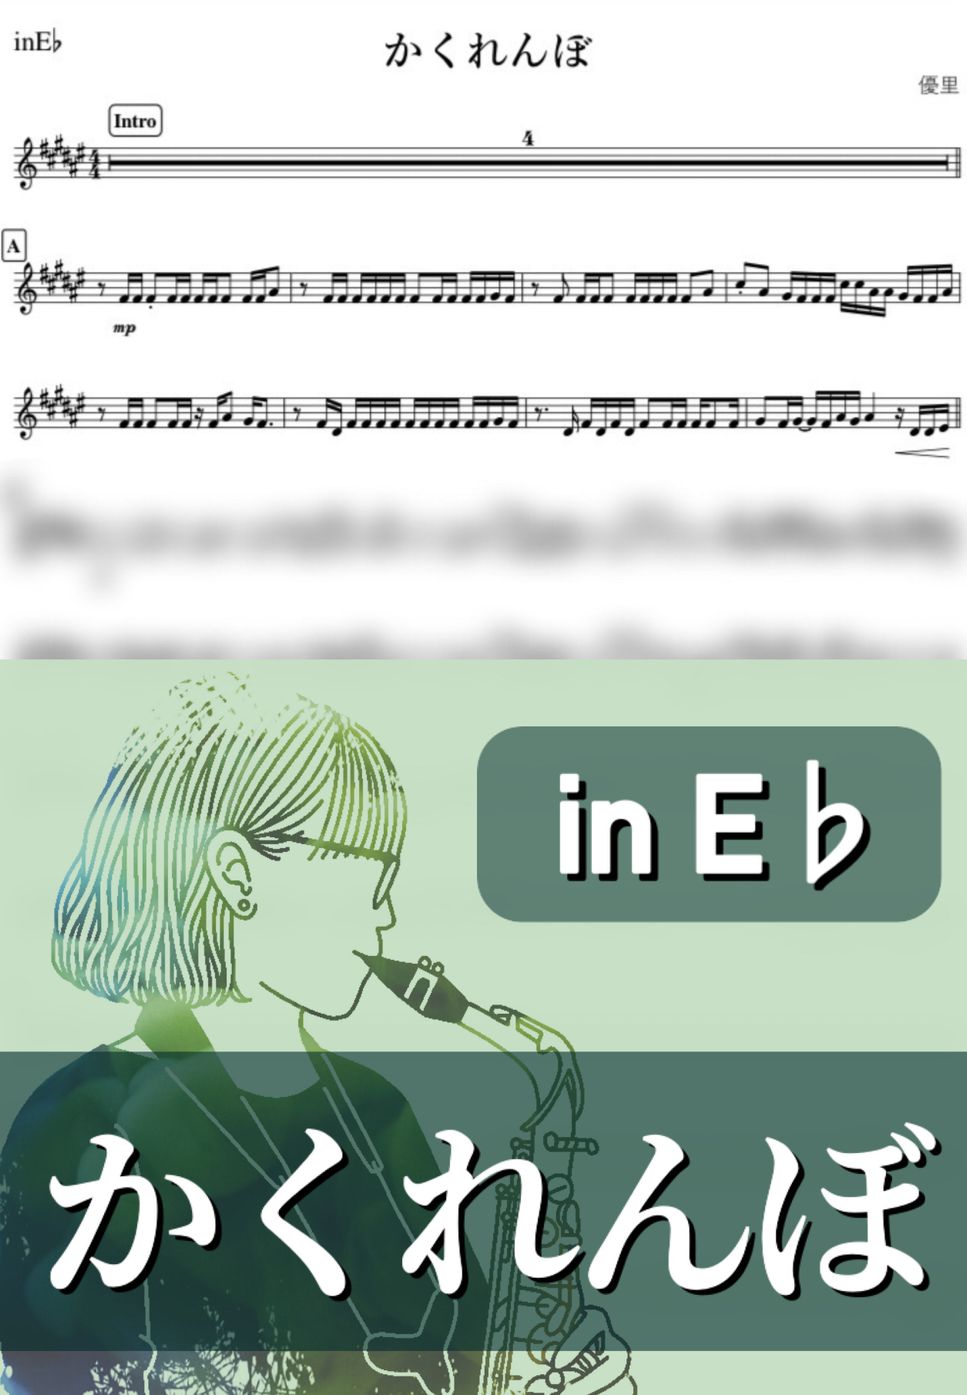 優里 - かくれんぼ (E♭) by kanamusic